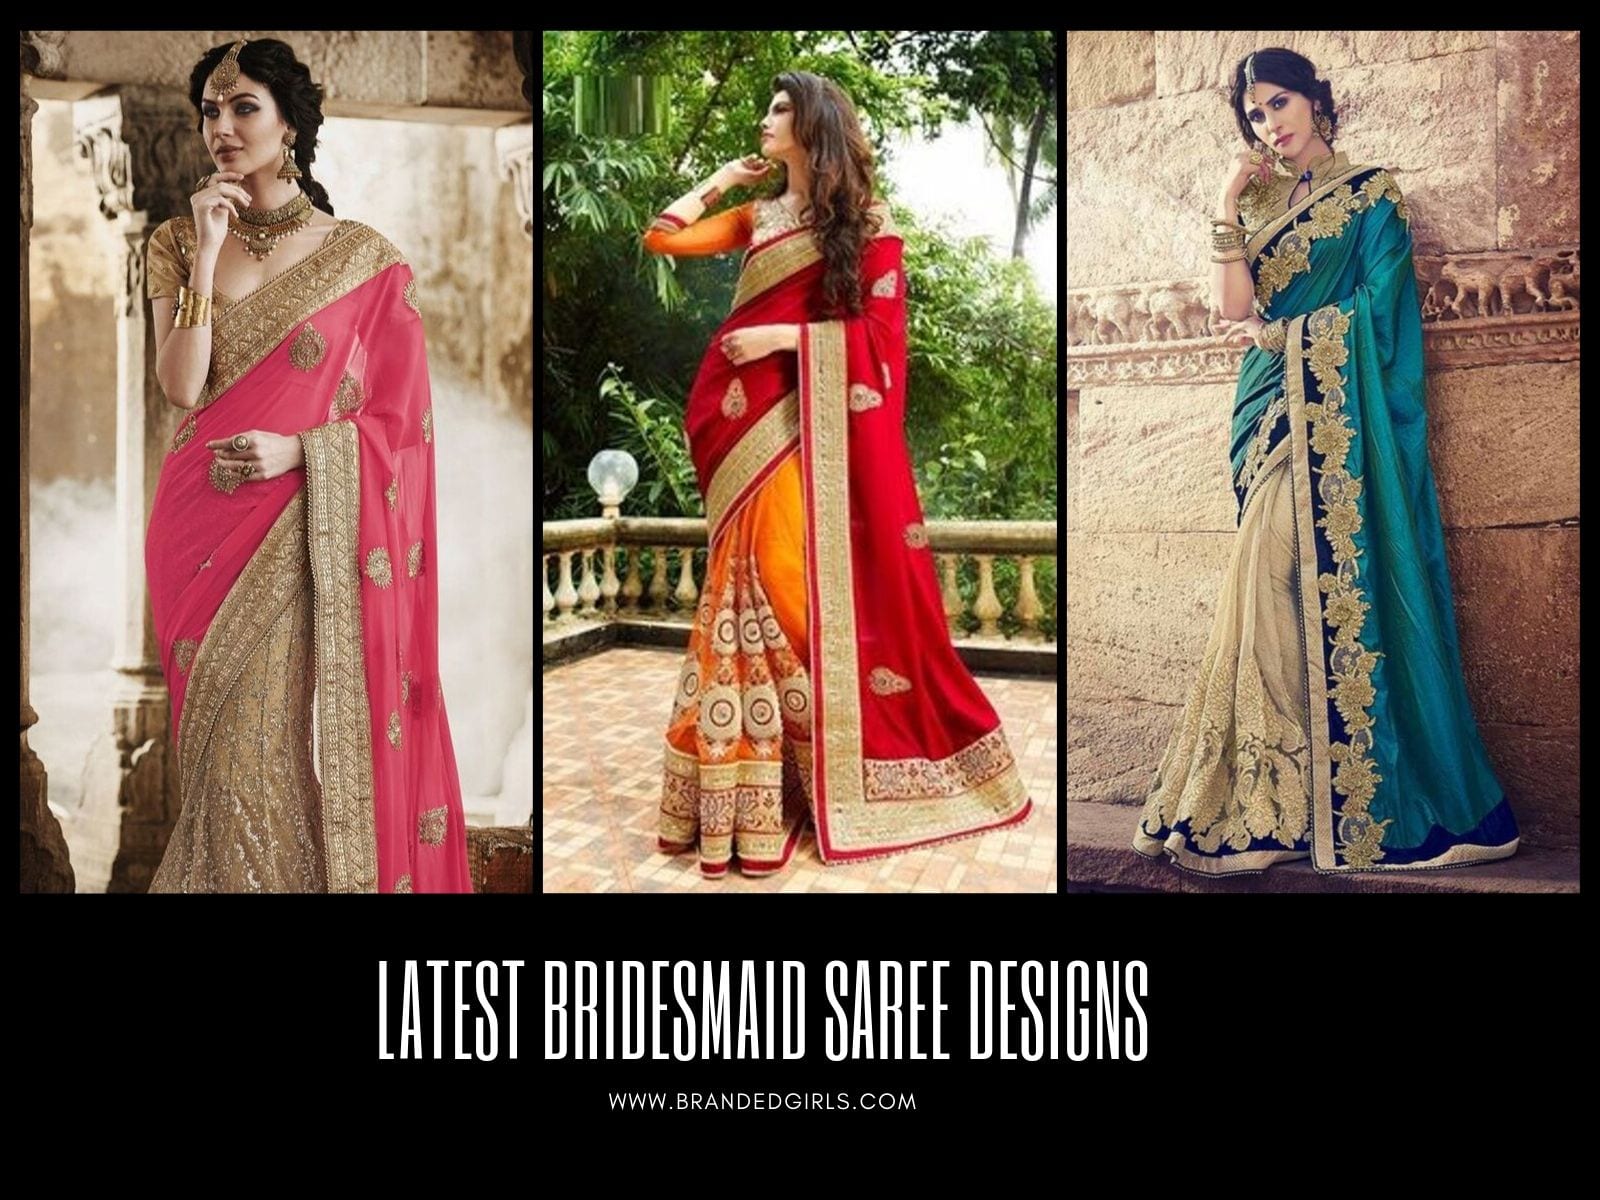 Bridesmaid Saree Design Ideas